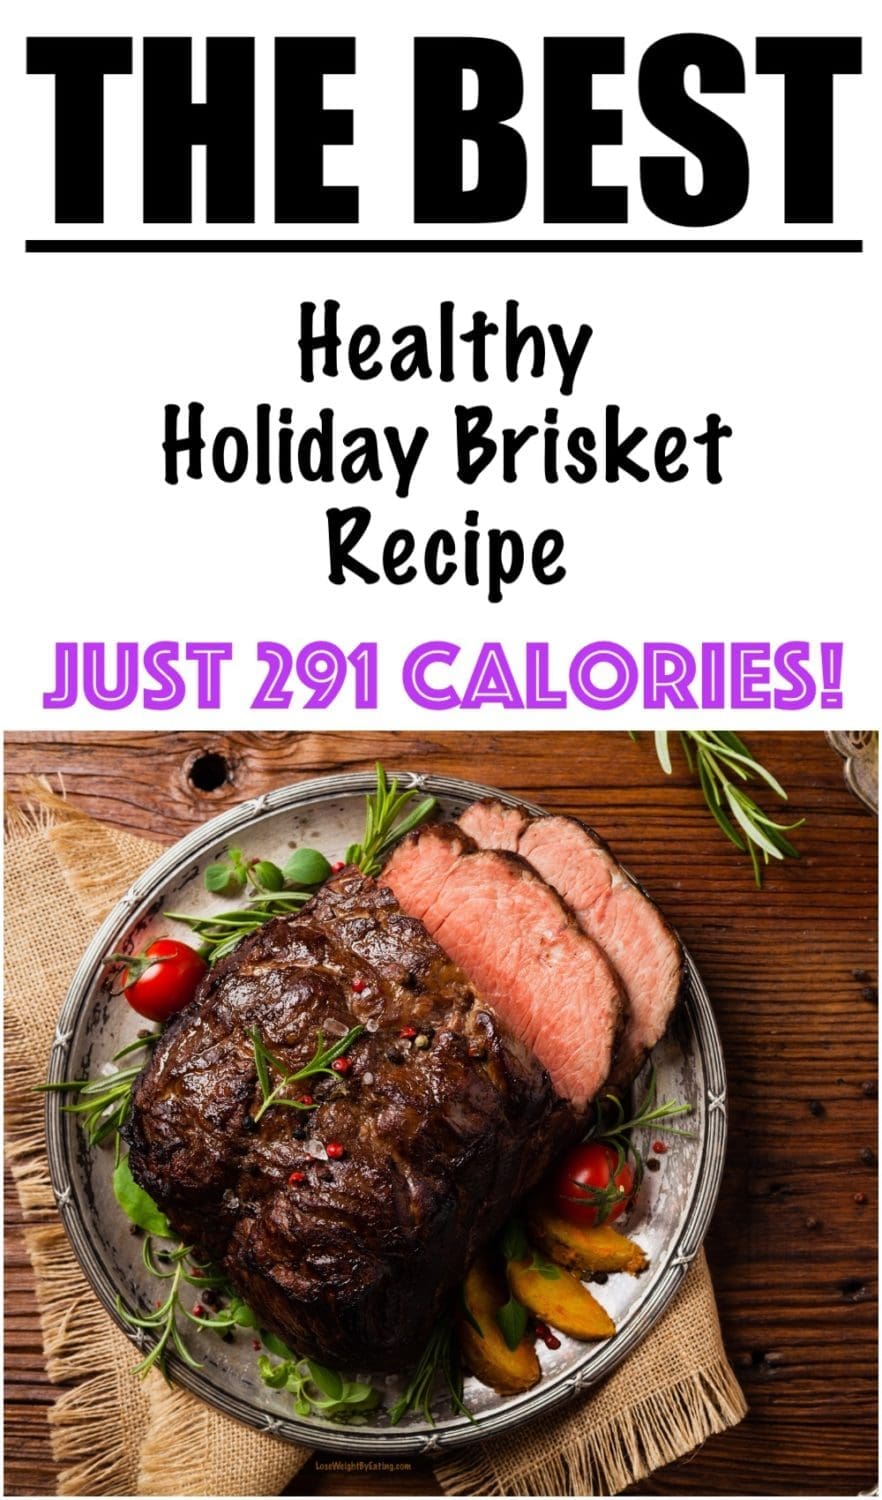 Healthy Holiday Brisket Recipe